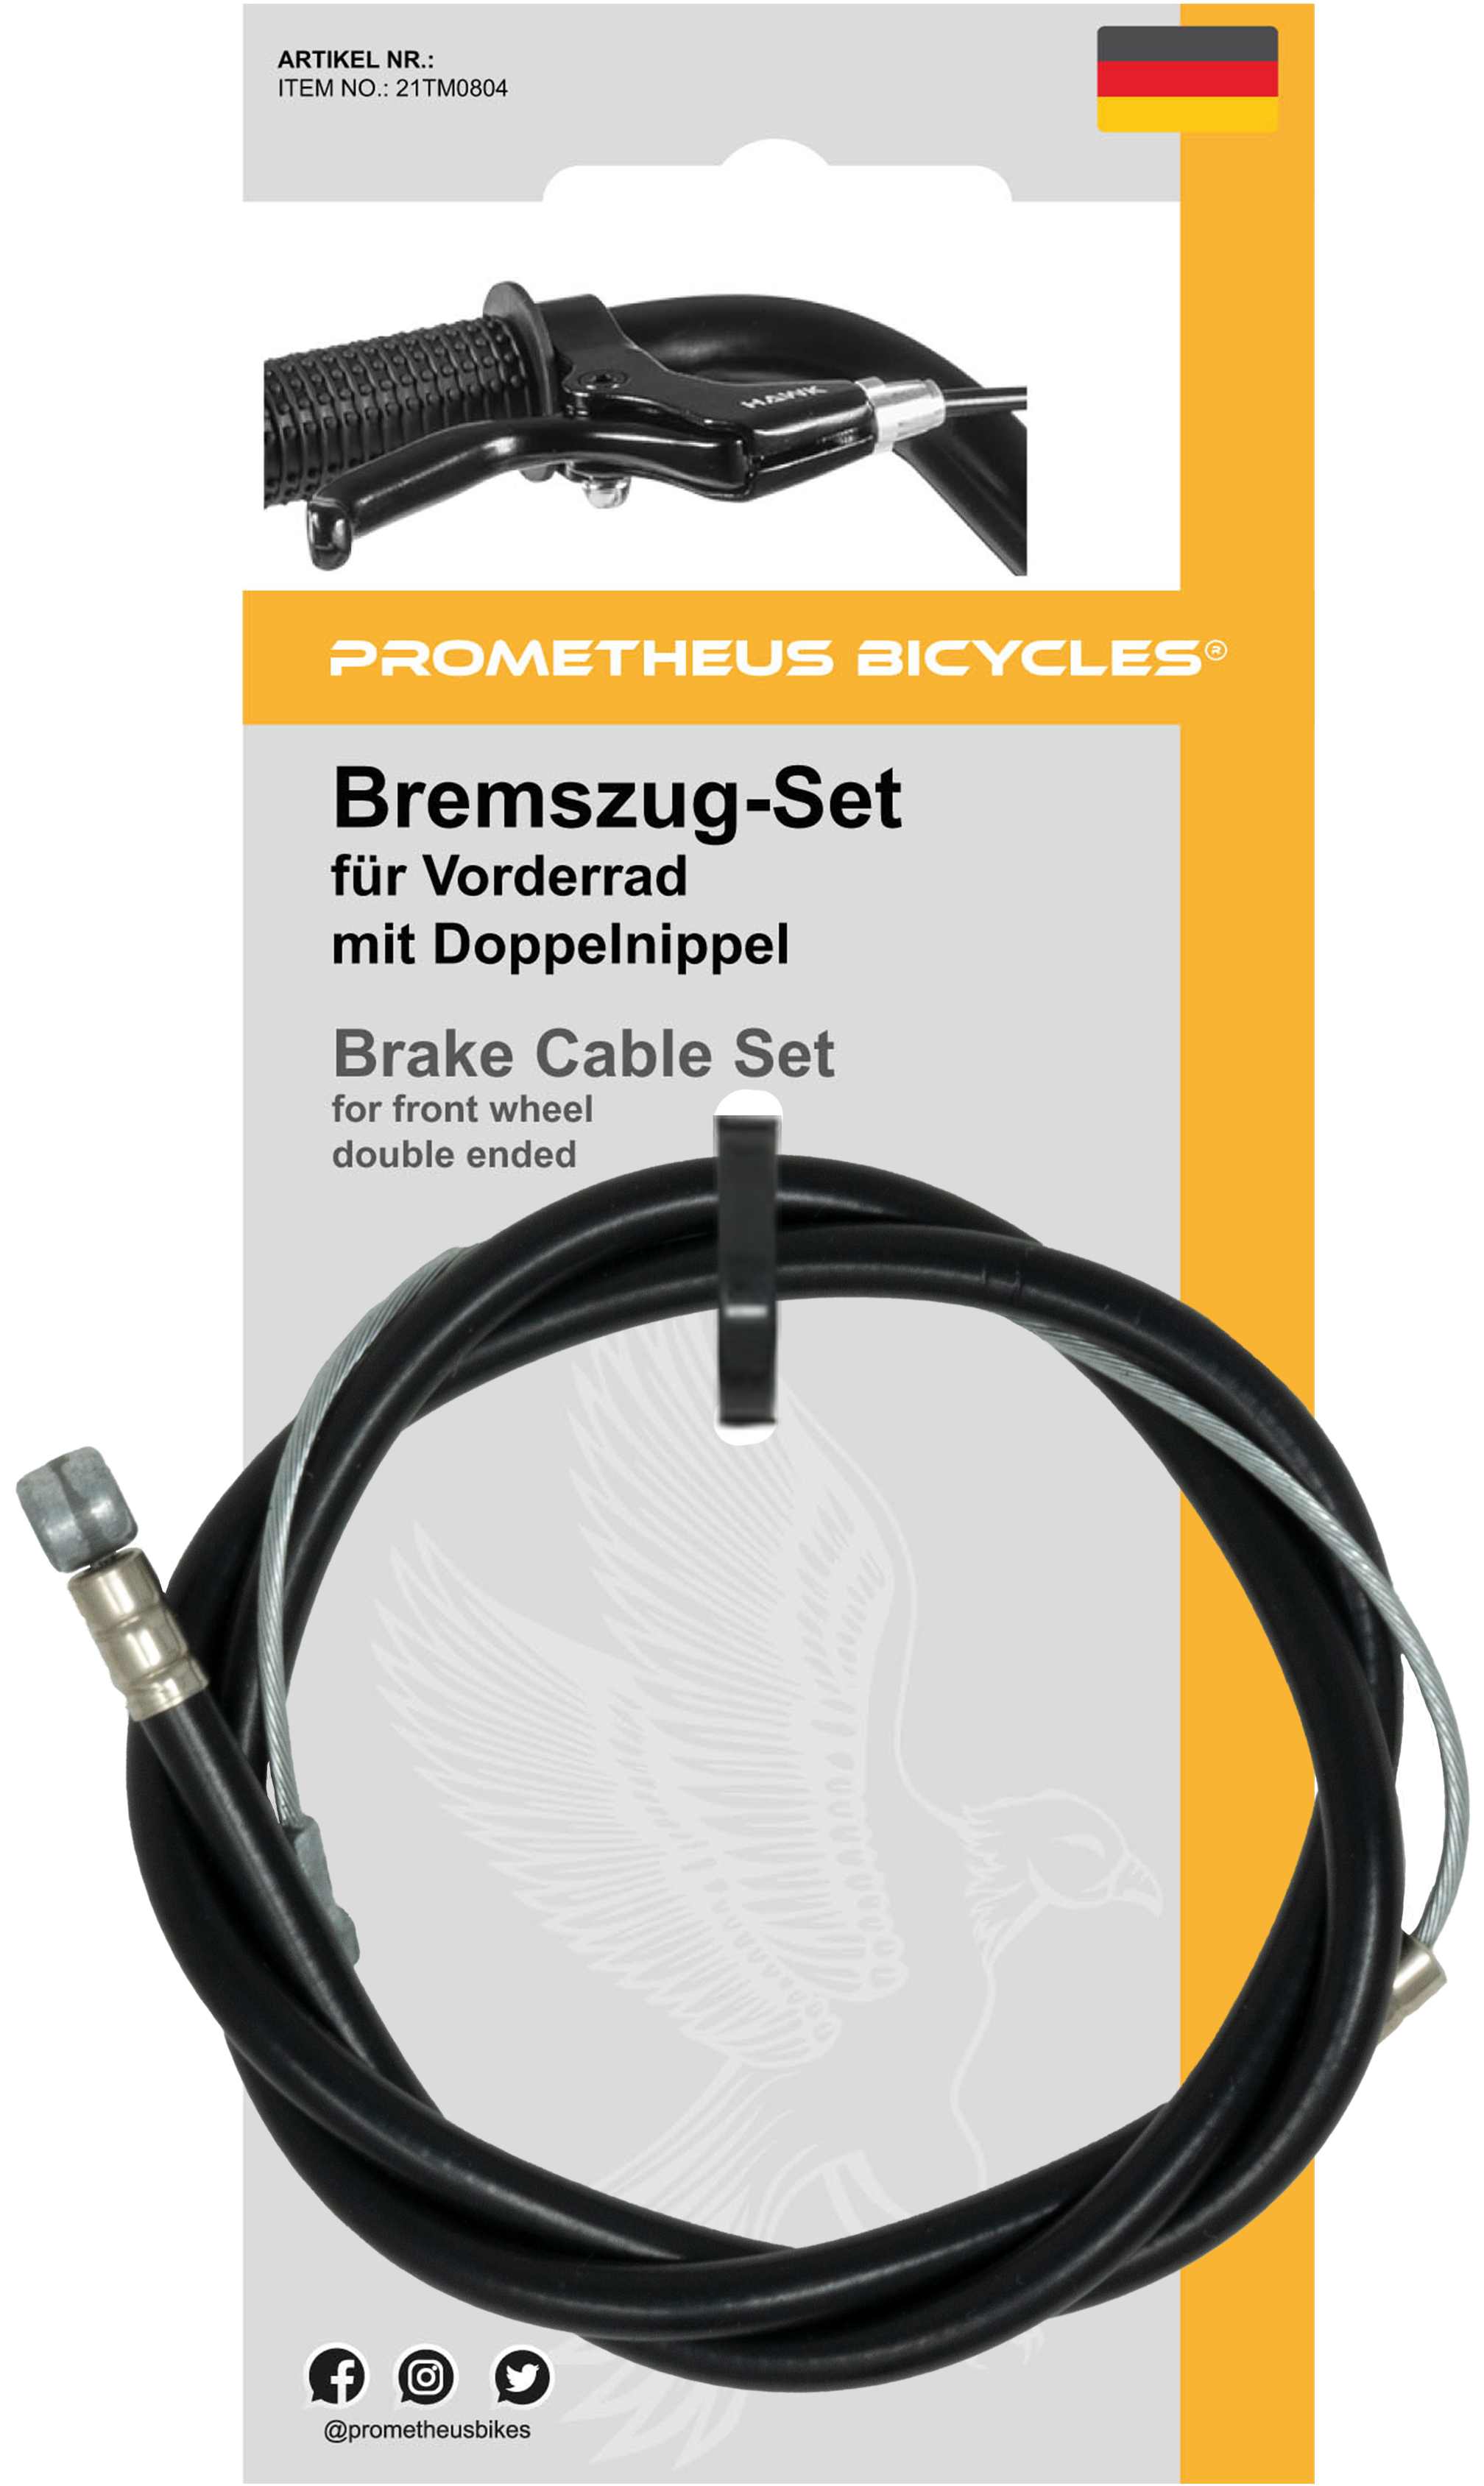 https://prometheus-bikes.de/media/image/5f/7f/fa/1_Bremszug_prometheus_21TM0804.jpg